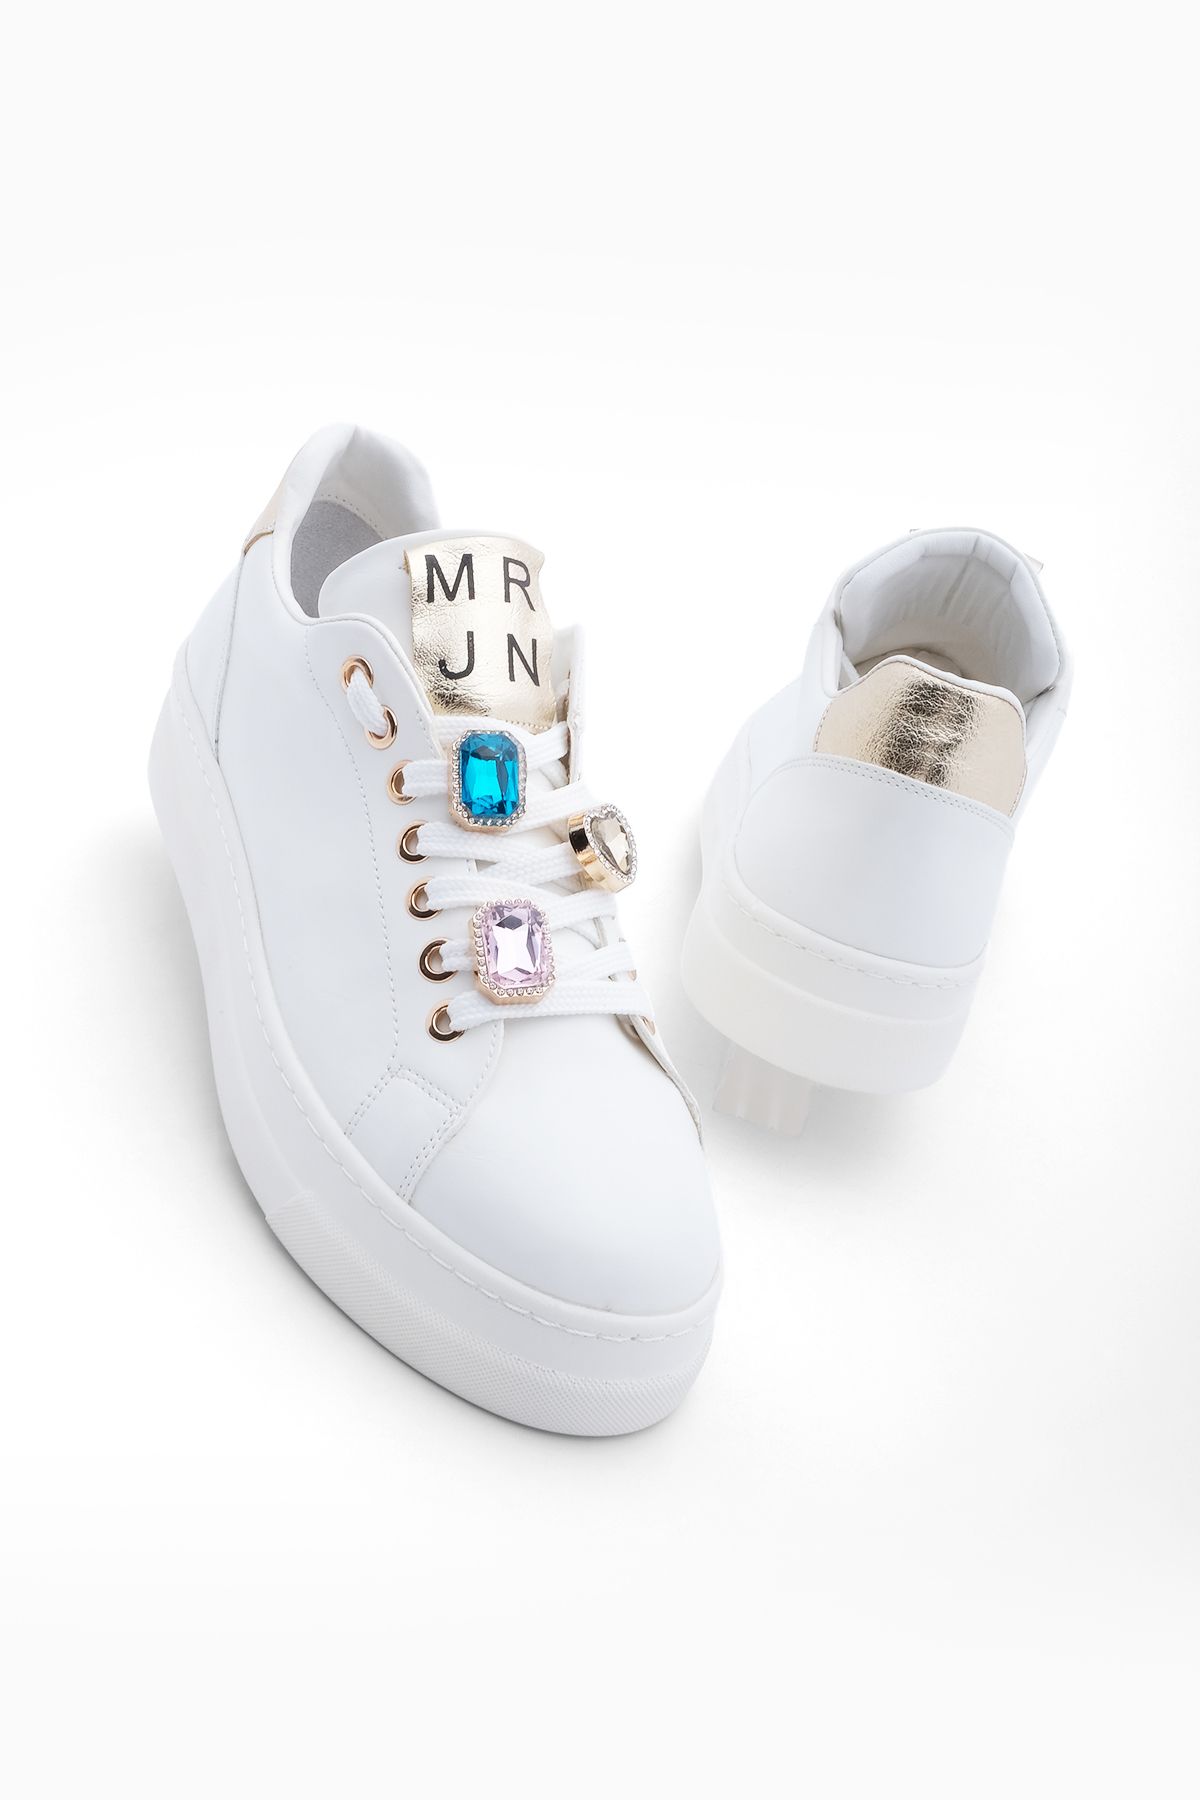 Marjin Kadın Sneaker Yüksek Taban Taşlı Spor Ayakkabı Ozmet Beyaz